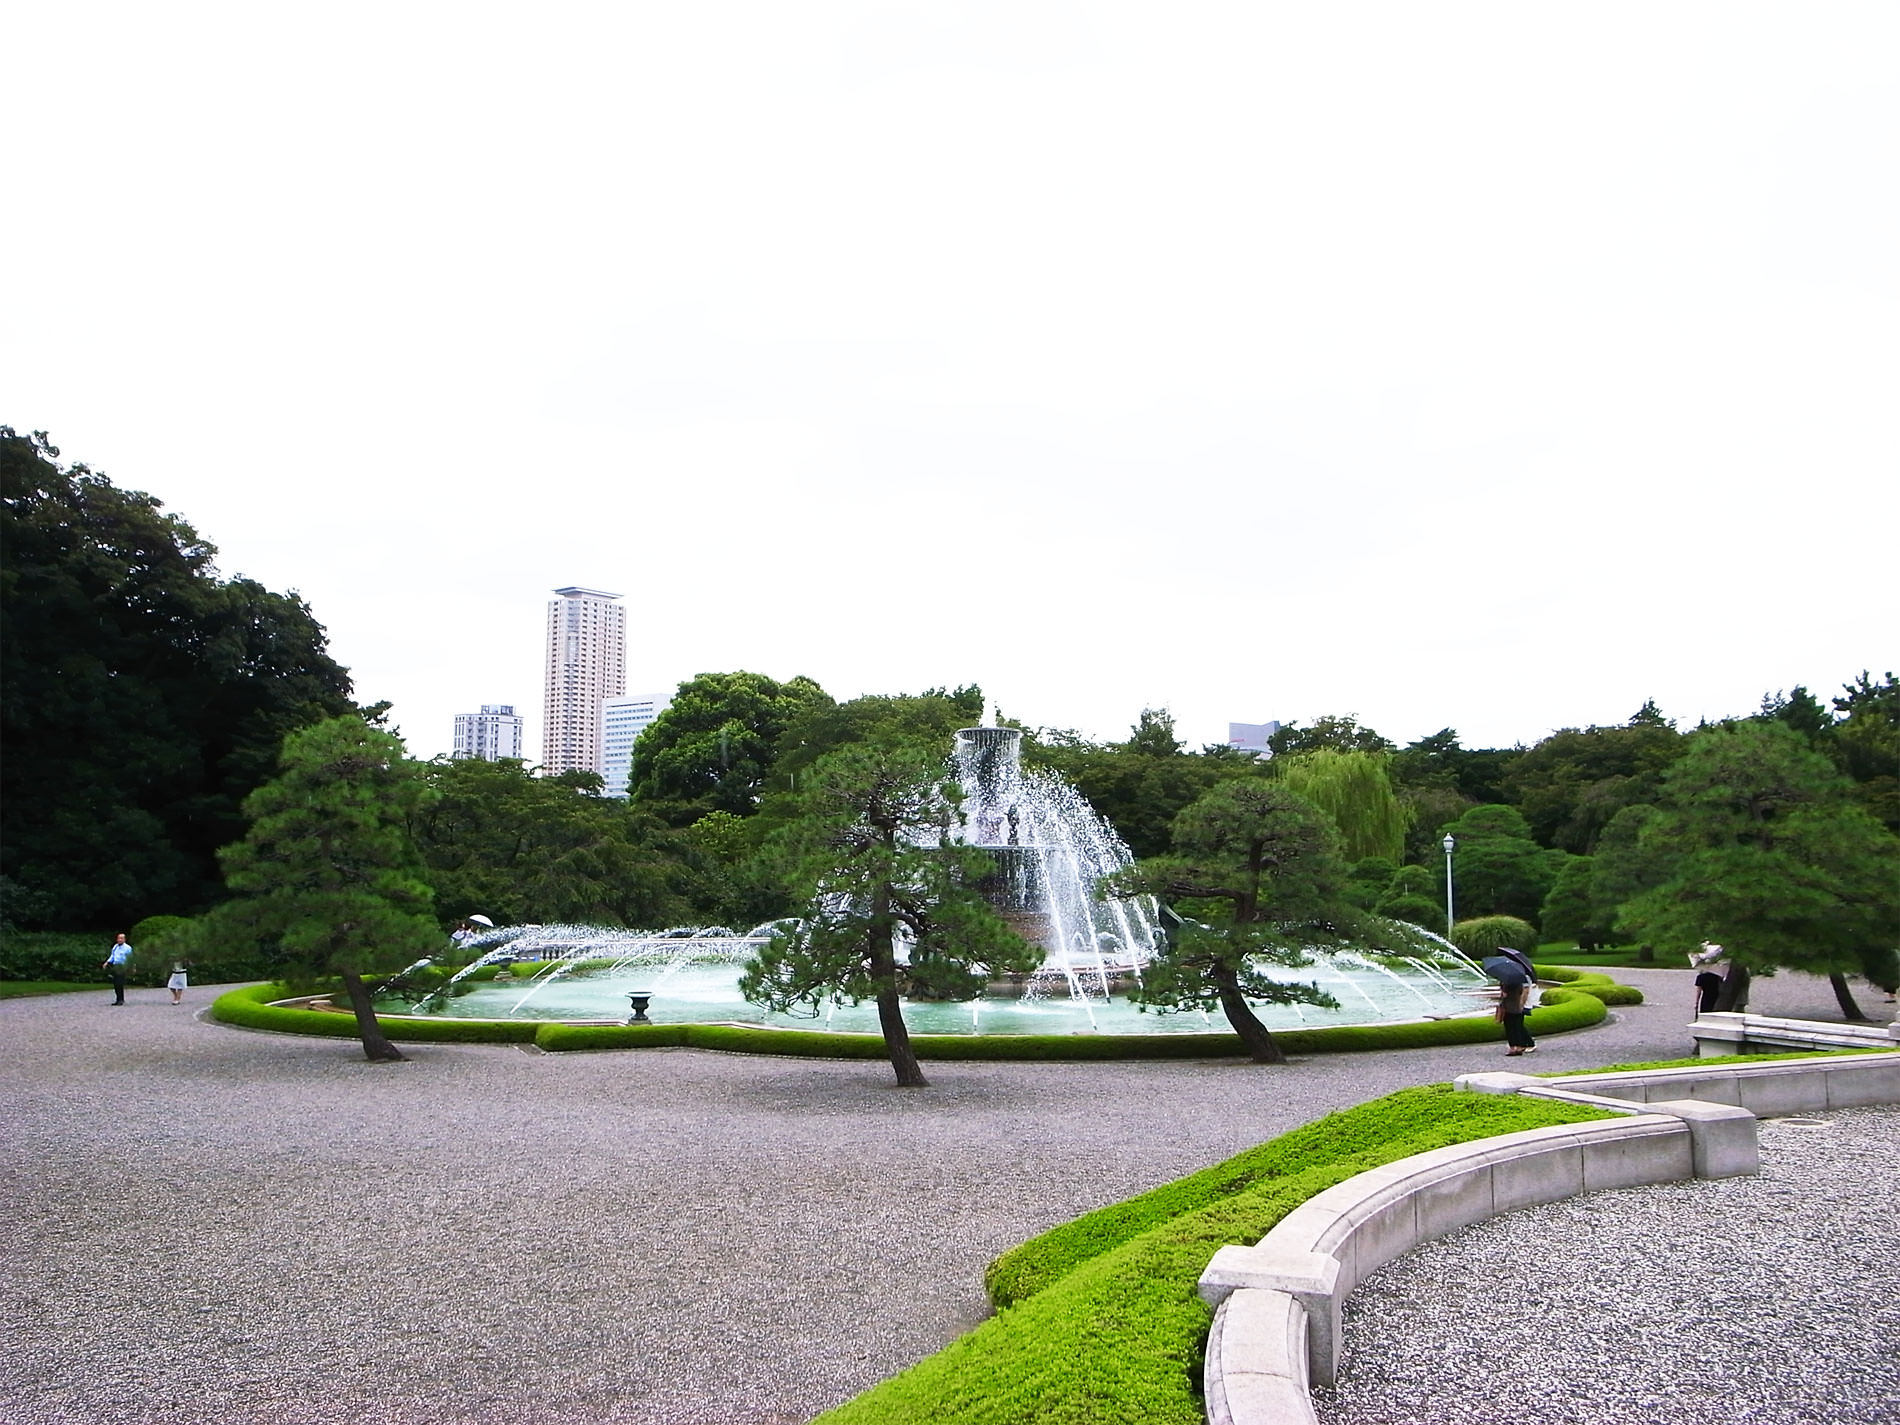 state_guest_house_akasaka_palace_tokyo_2015 | 迎賓館赤坂離宮を見学に行ってきました / 2015